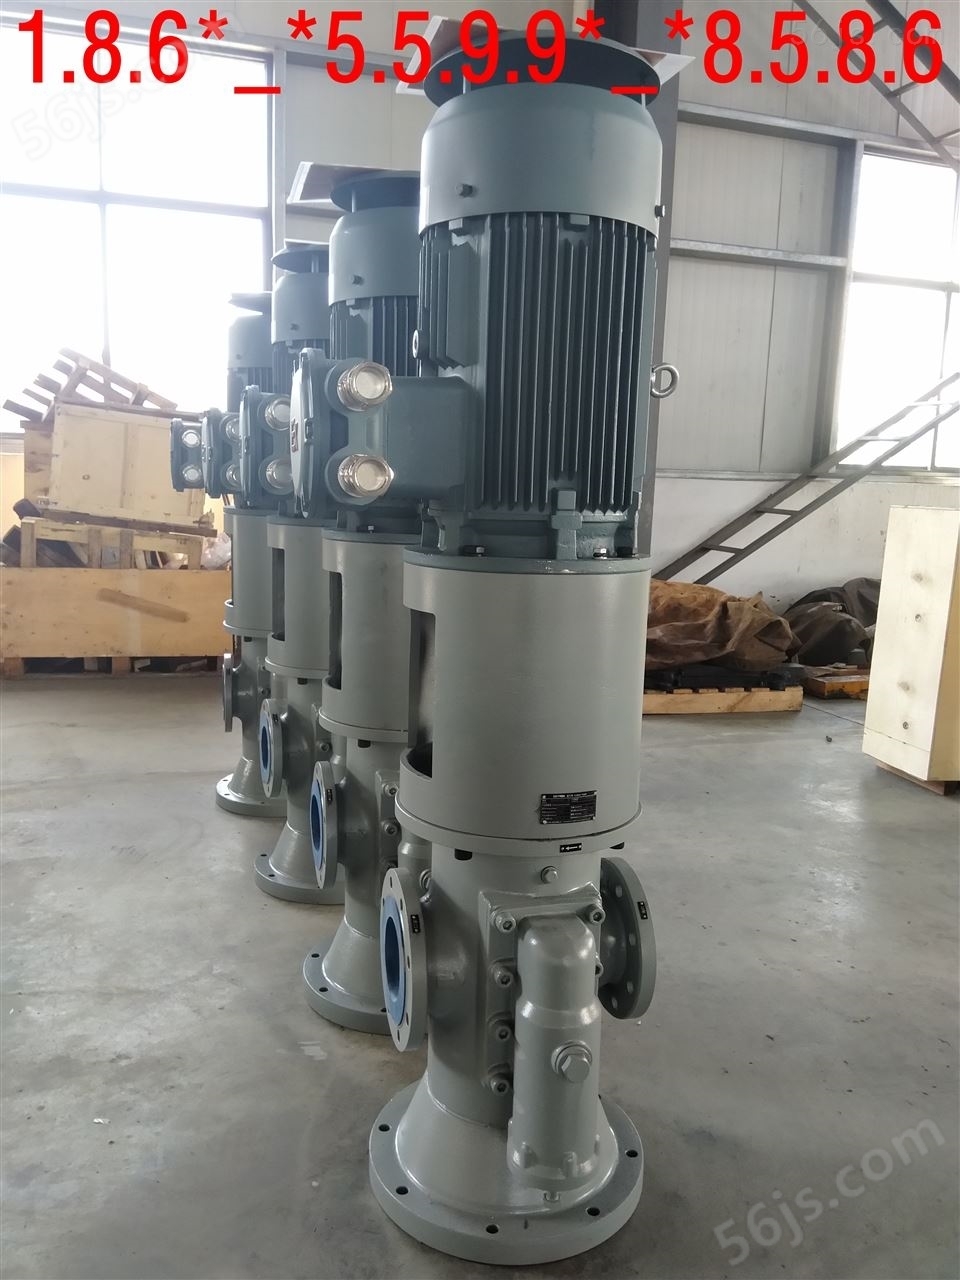 螺杆泵HSNS1300-42黄山铁人泵业耐磨螺杆泵